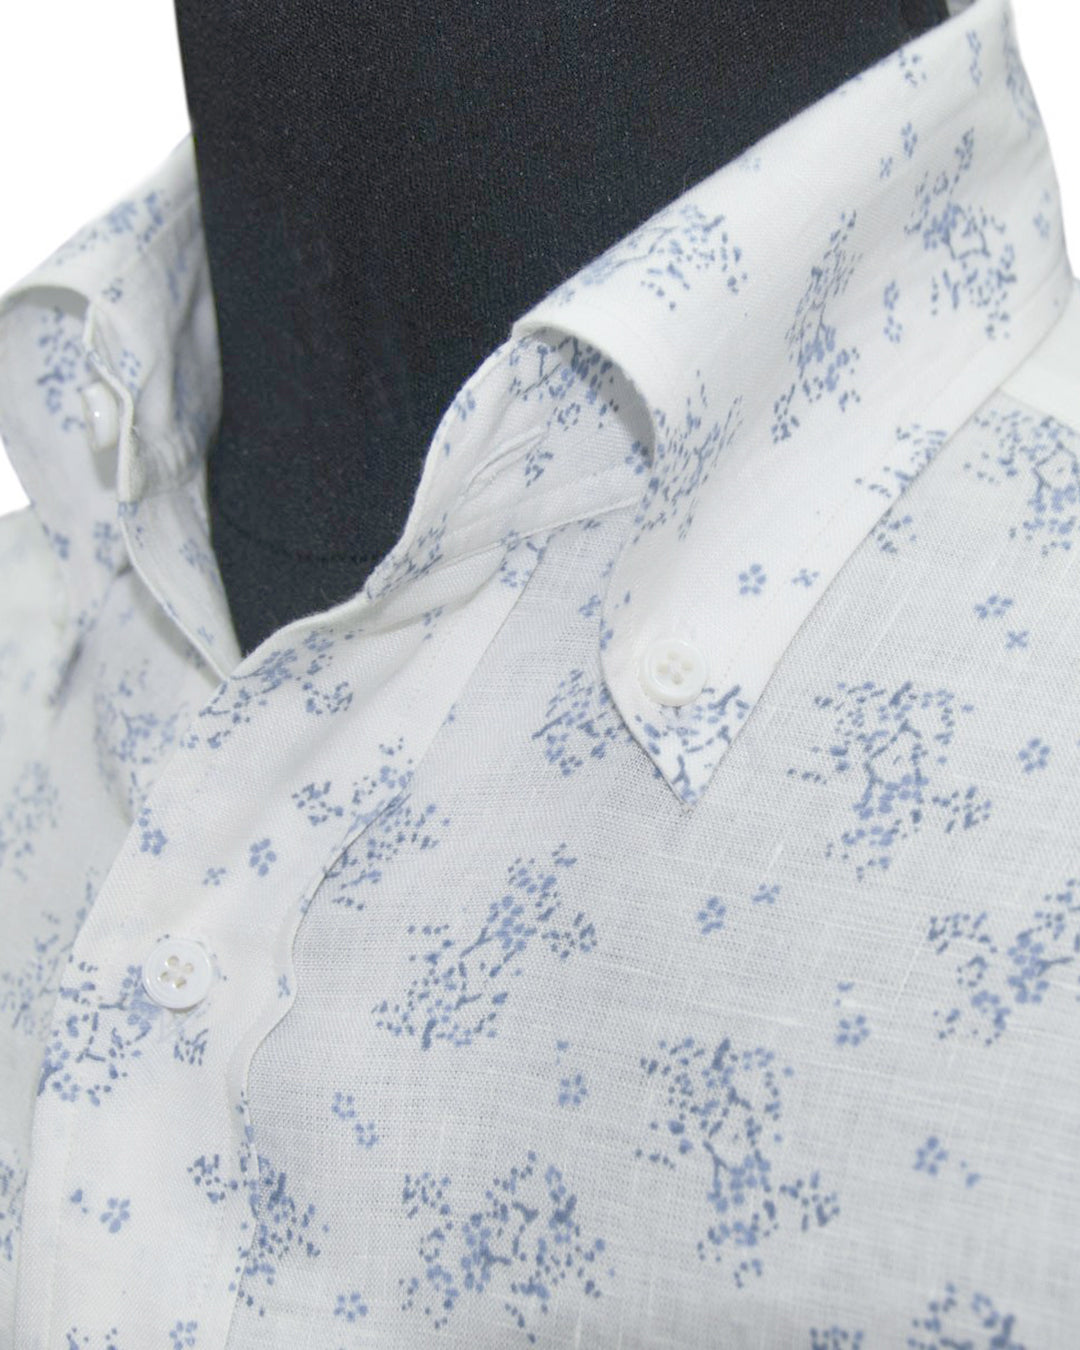 Collar of custom linen shirt for men in pale blue printed shrubs